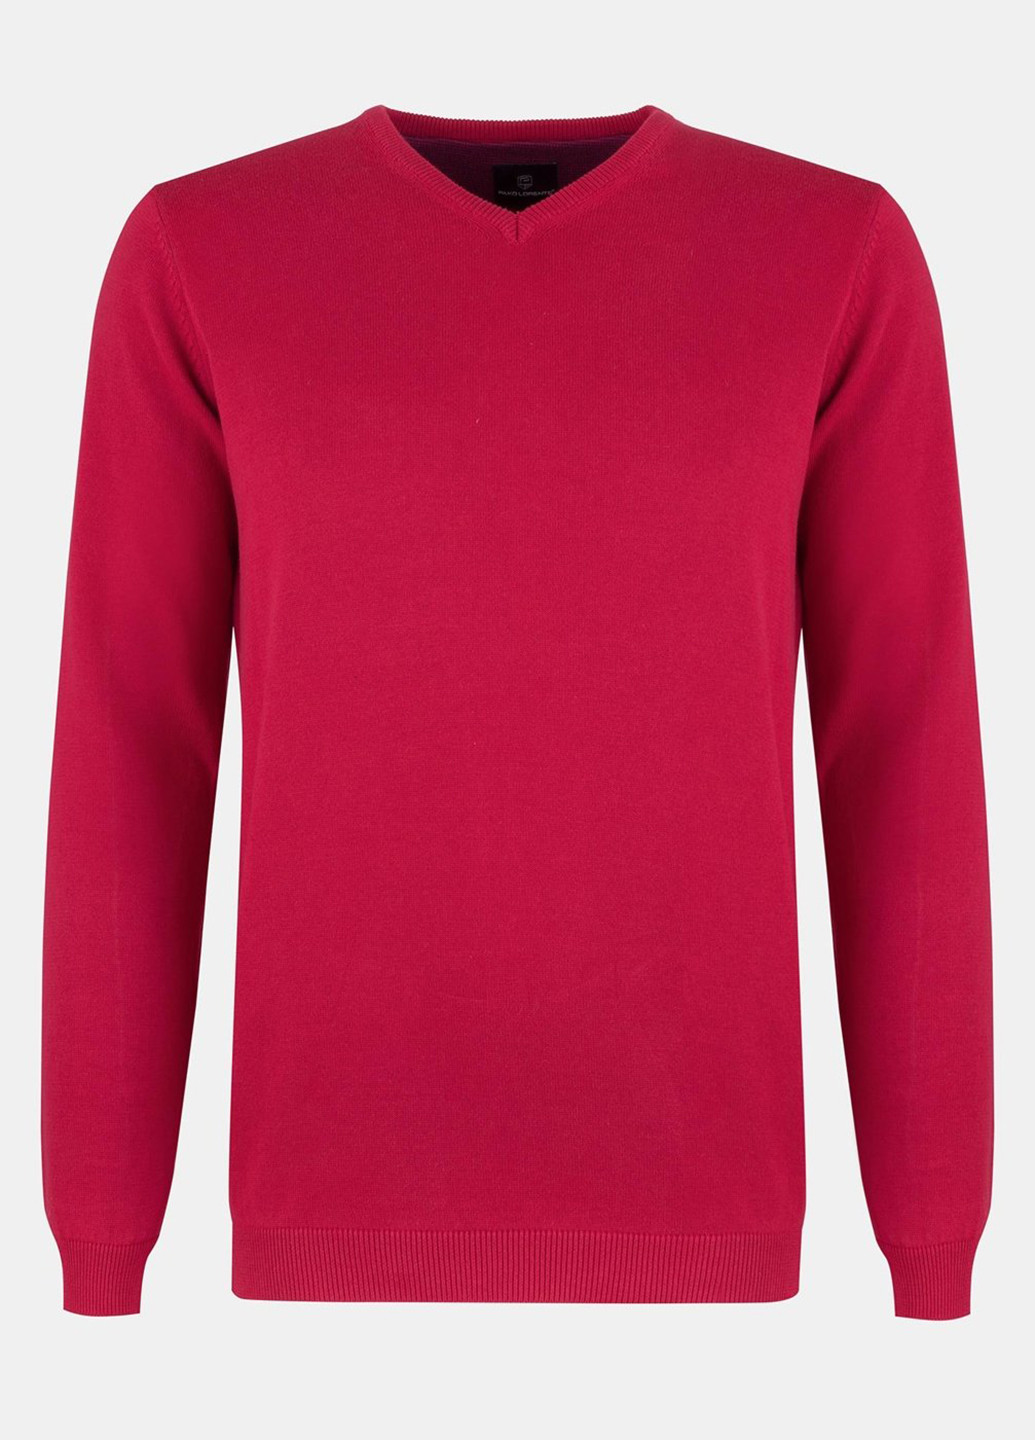 Красный демисезонный пуловер пуловер Pako Lorente